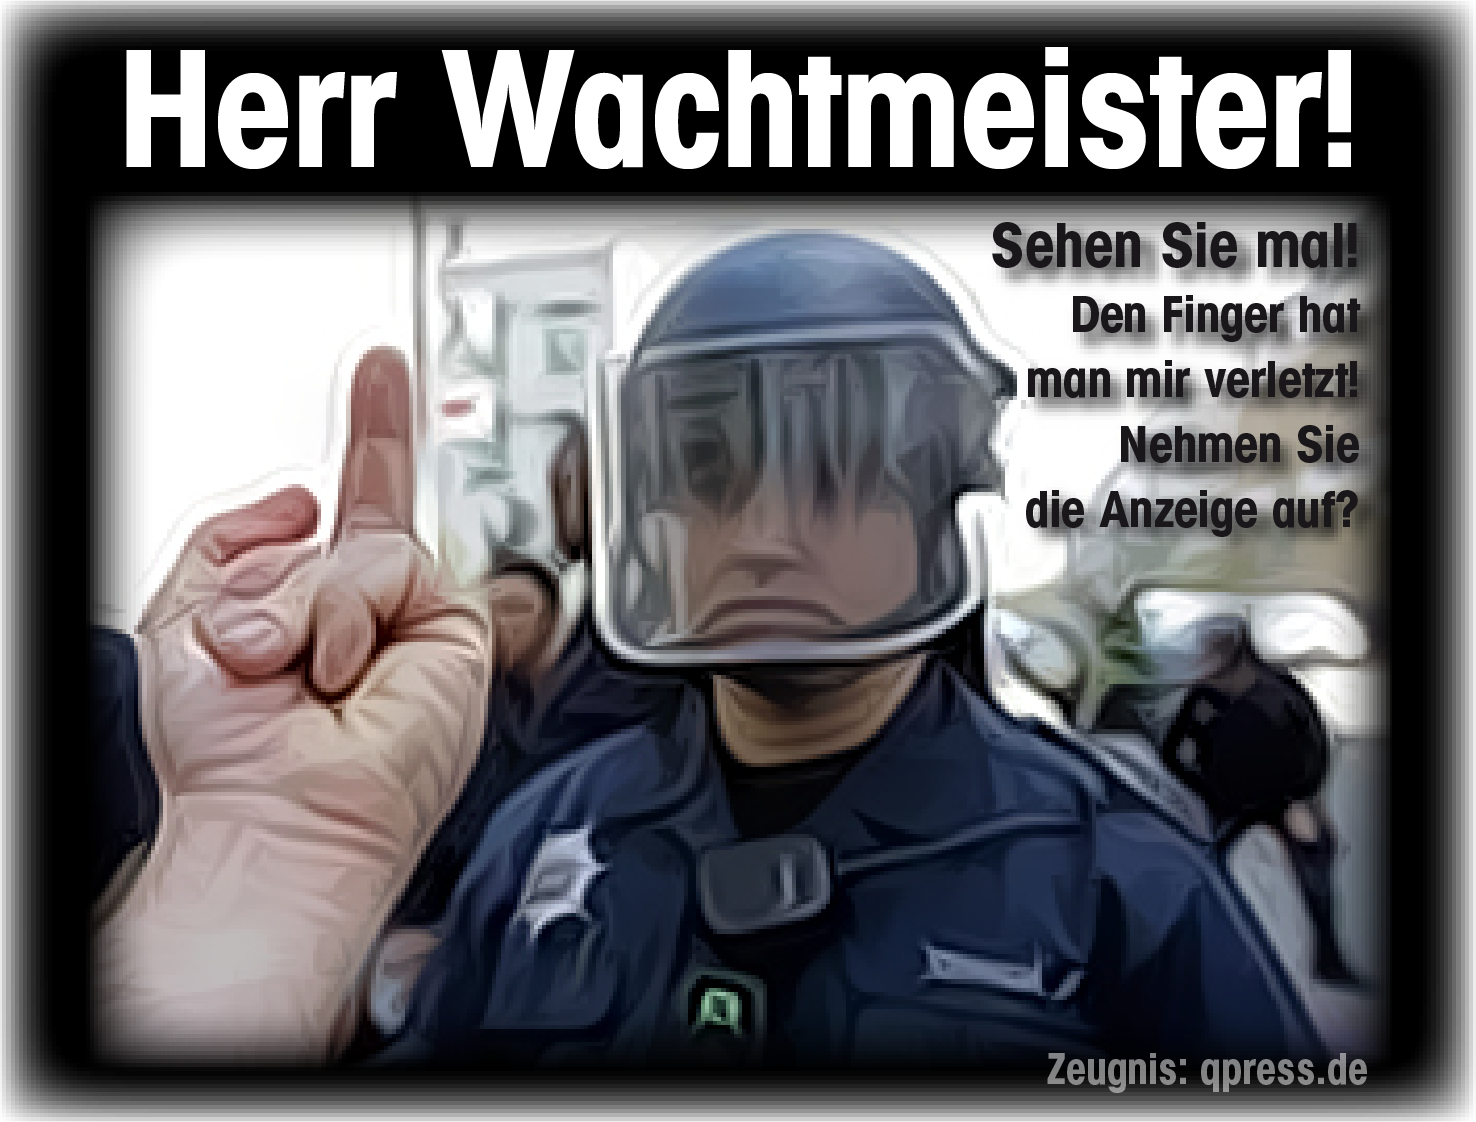 Wachtmeister Anzeige aufnehmen-polizei widerstadn ungehorsam protest qpress